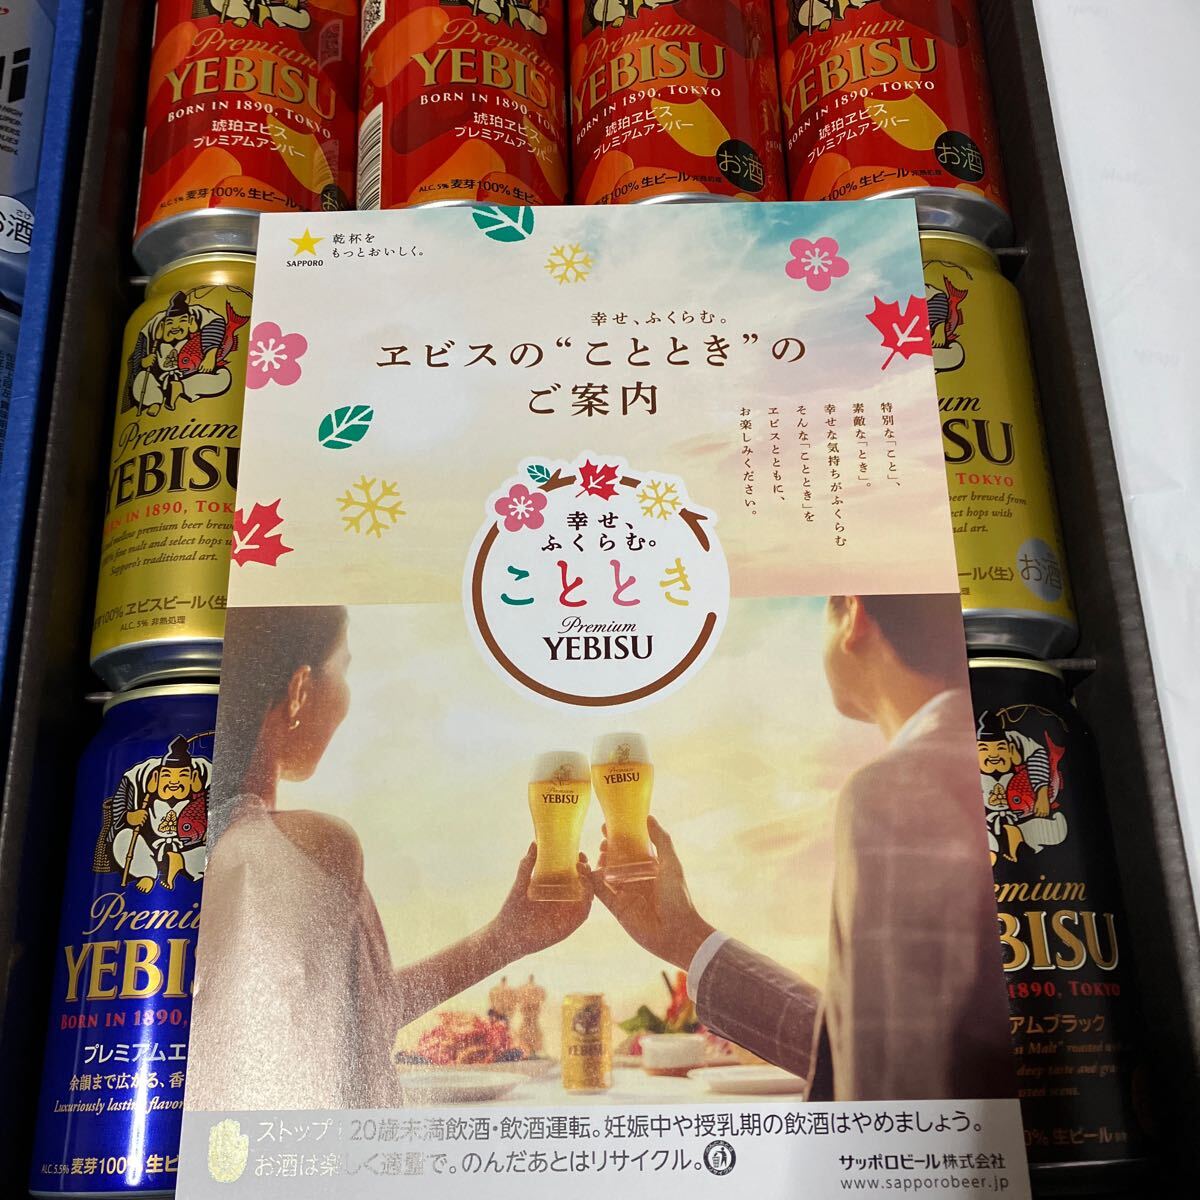 24шт.@ Asahi super dry e винт сырой пиво подарок комплект набор пиво Asahi 